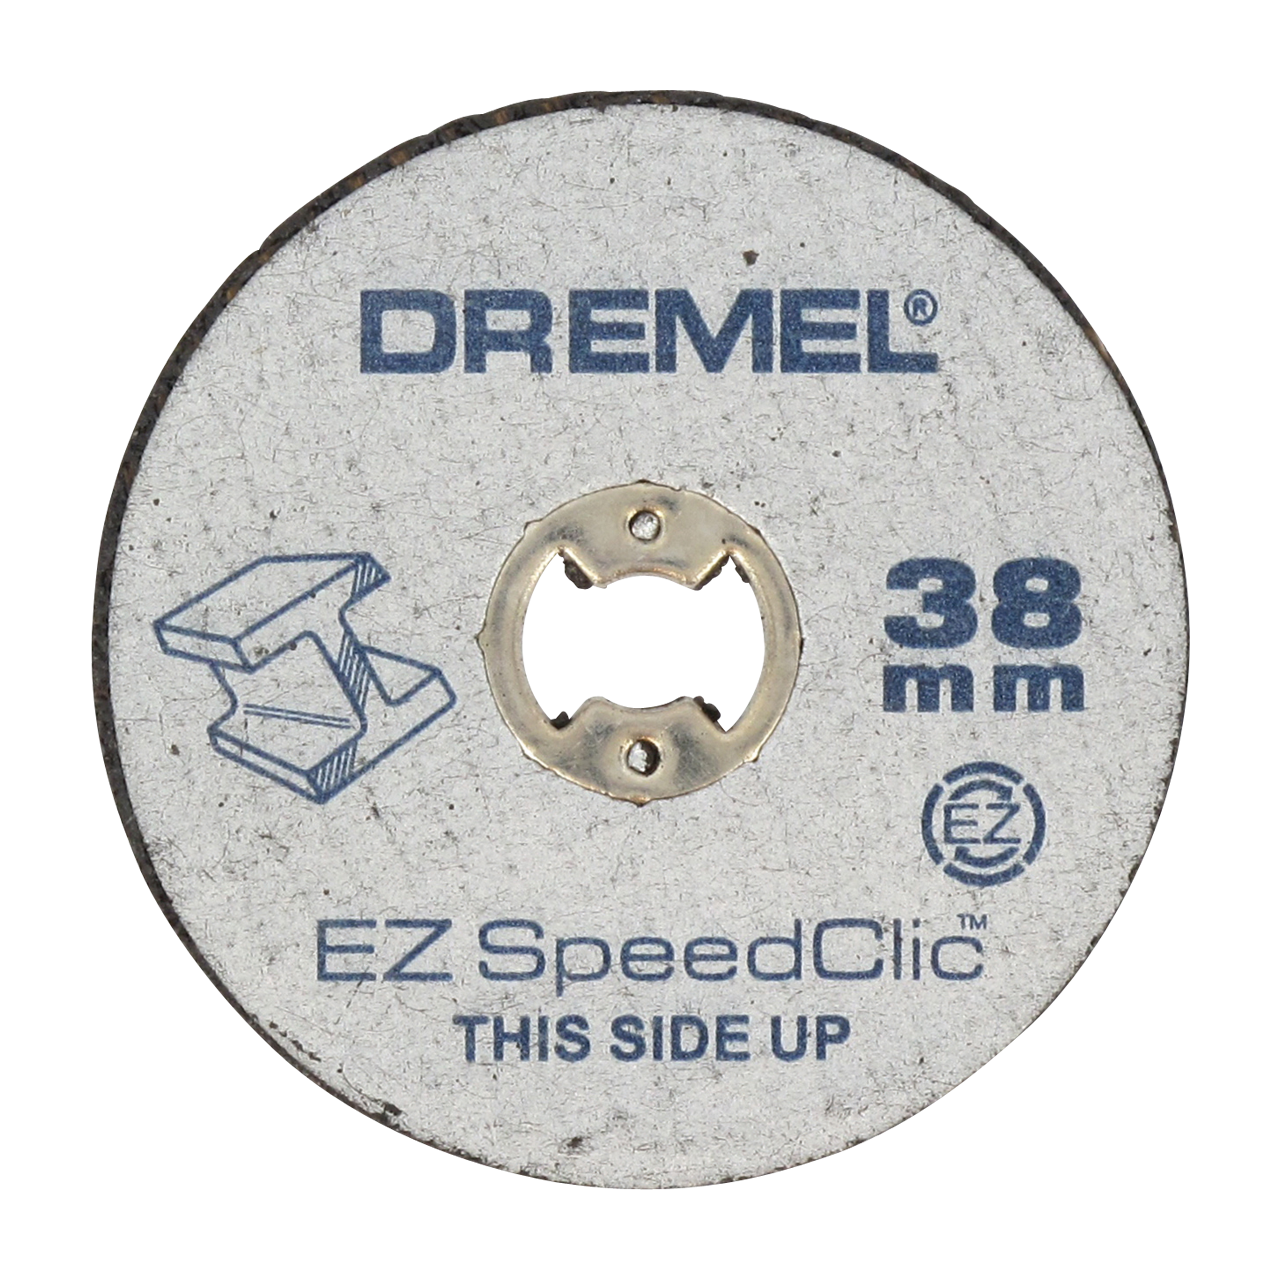 Disque à tronçonner premium ez speedclic dremel max s456 pour métaux - ø 38  mm DREMEL Pas Cher 